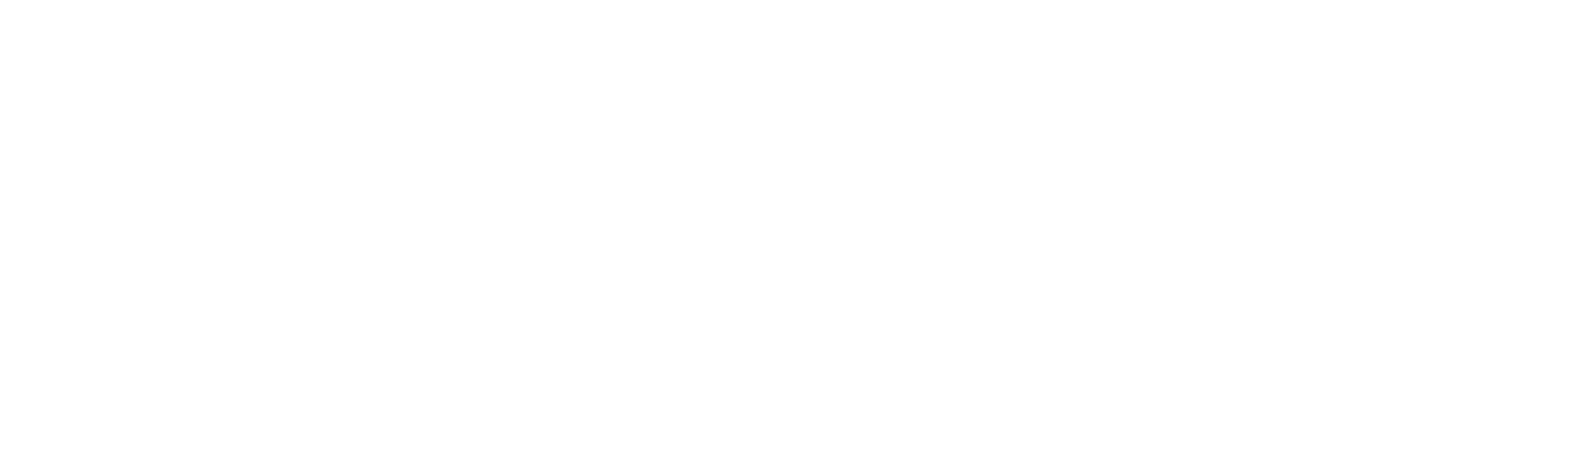 EnLink Midstream
 logo large for dark backgrounds (transparent PNG)